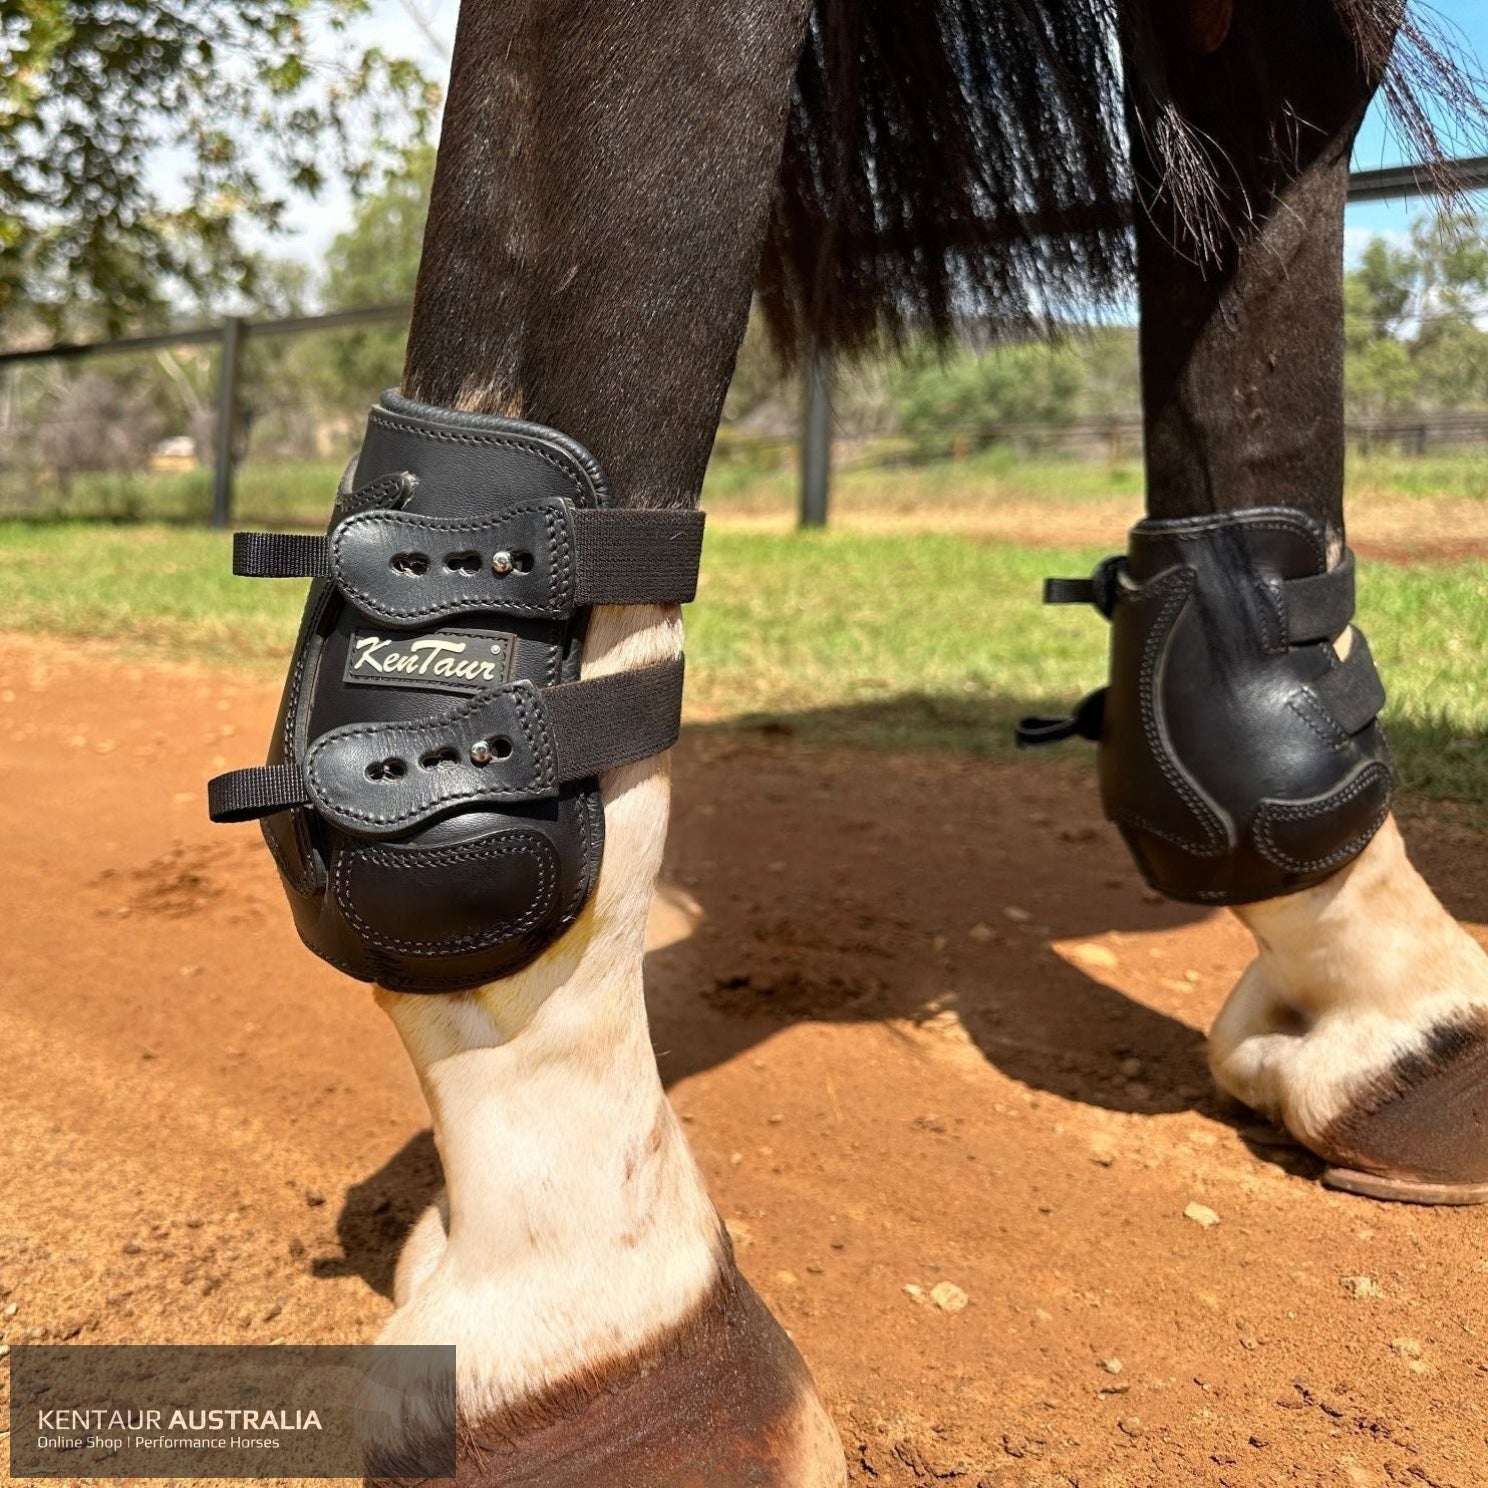 Kentaur ’Flicker 17cm’ Hind Boot Black / Full Jumping Boots